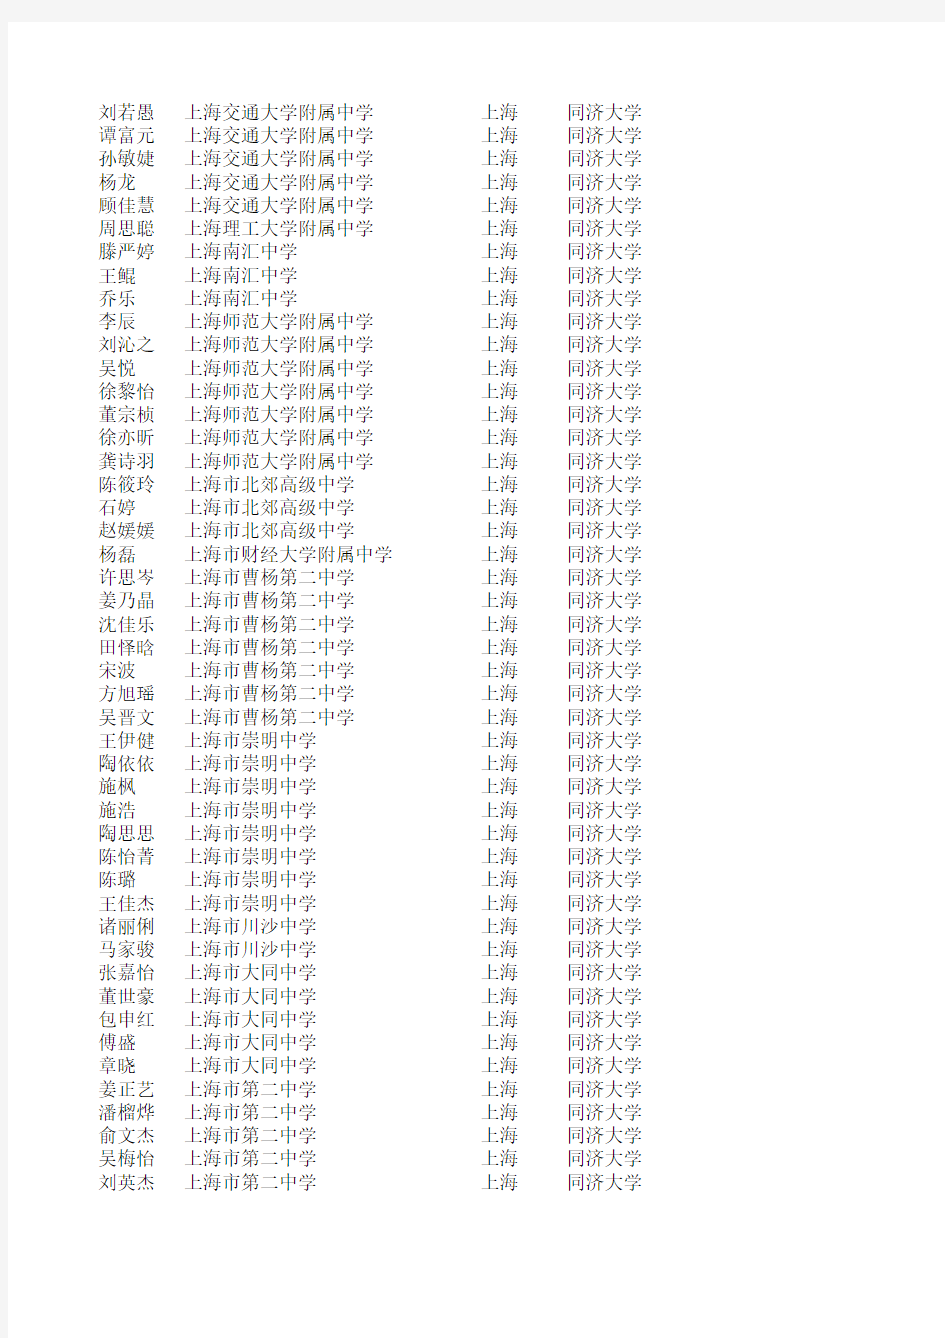 2011年同济大学自主招生录取名单(上海考生)